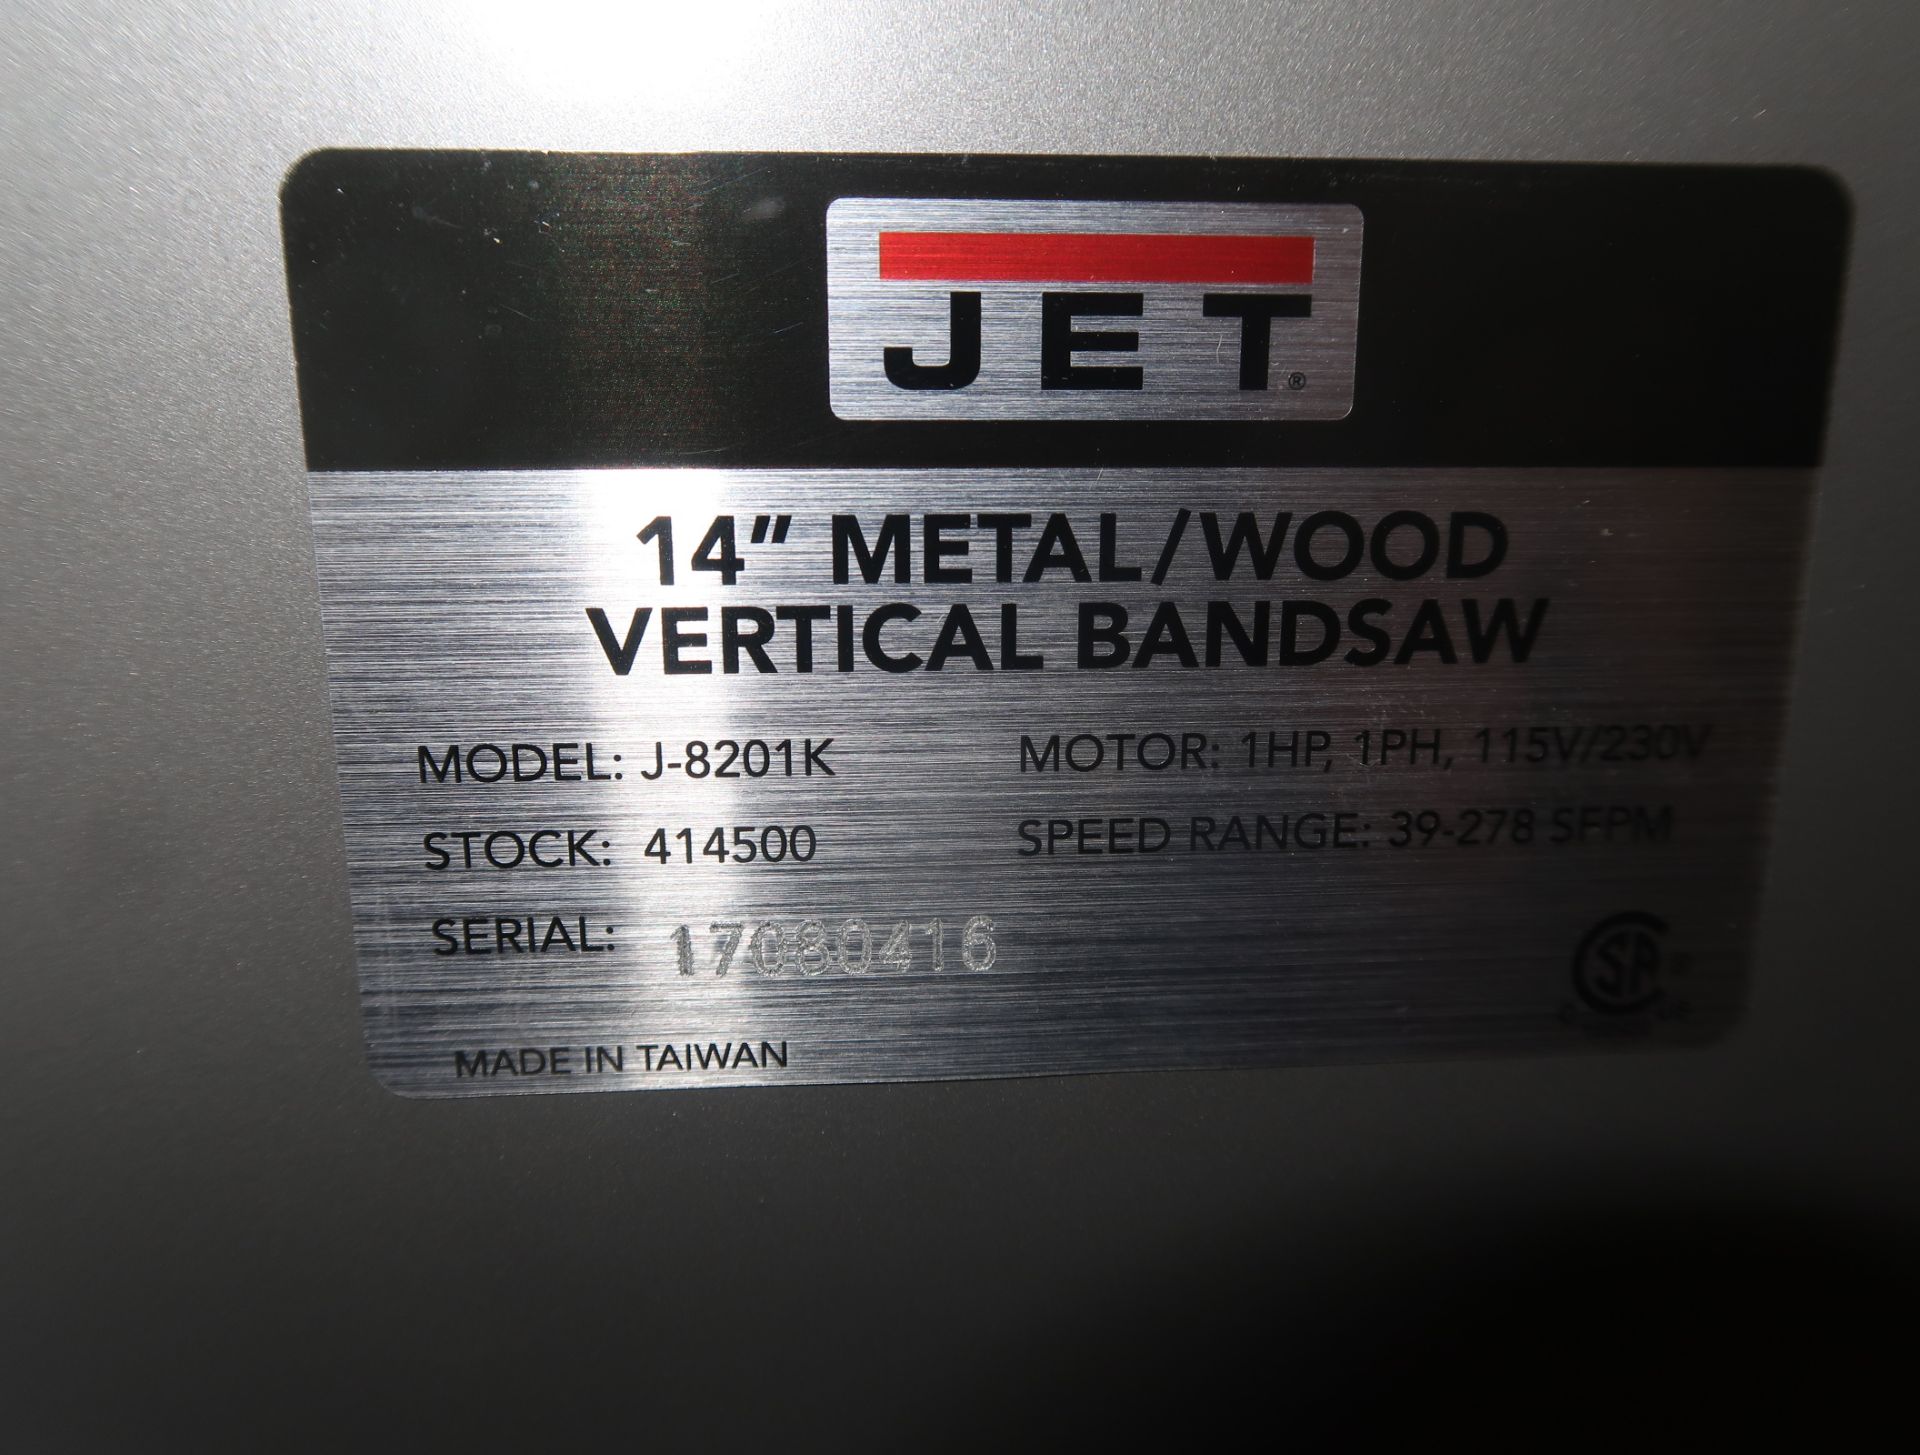 JET 14" METAL/WOOD VERTICAL BANDSAW MDL. J-8201K SN. 17080416 (NEW) - Image 2 of 3